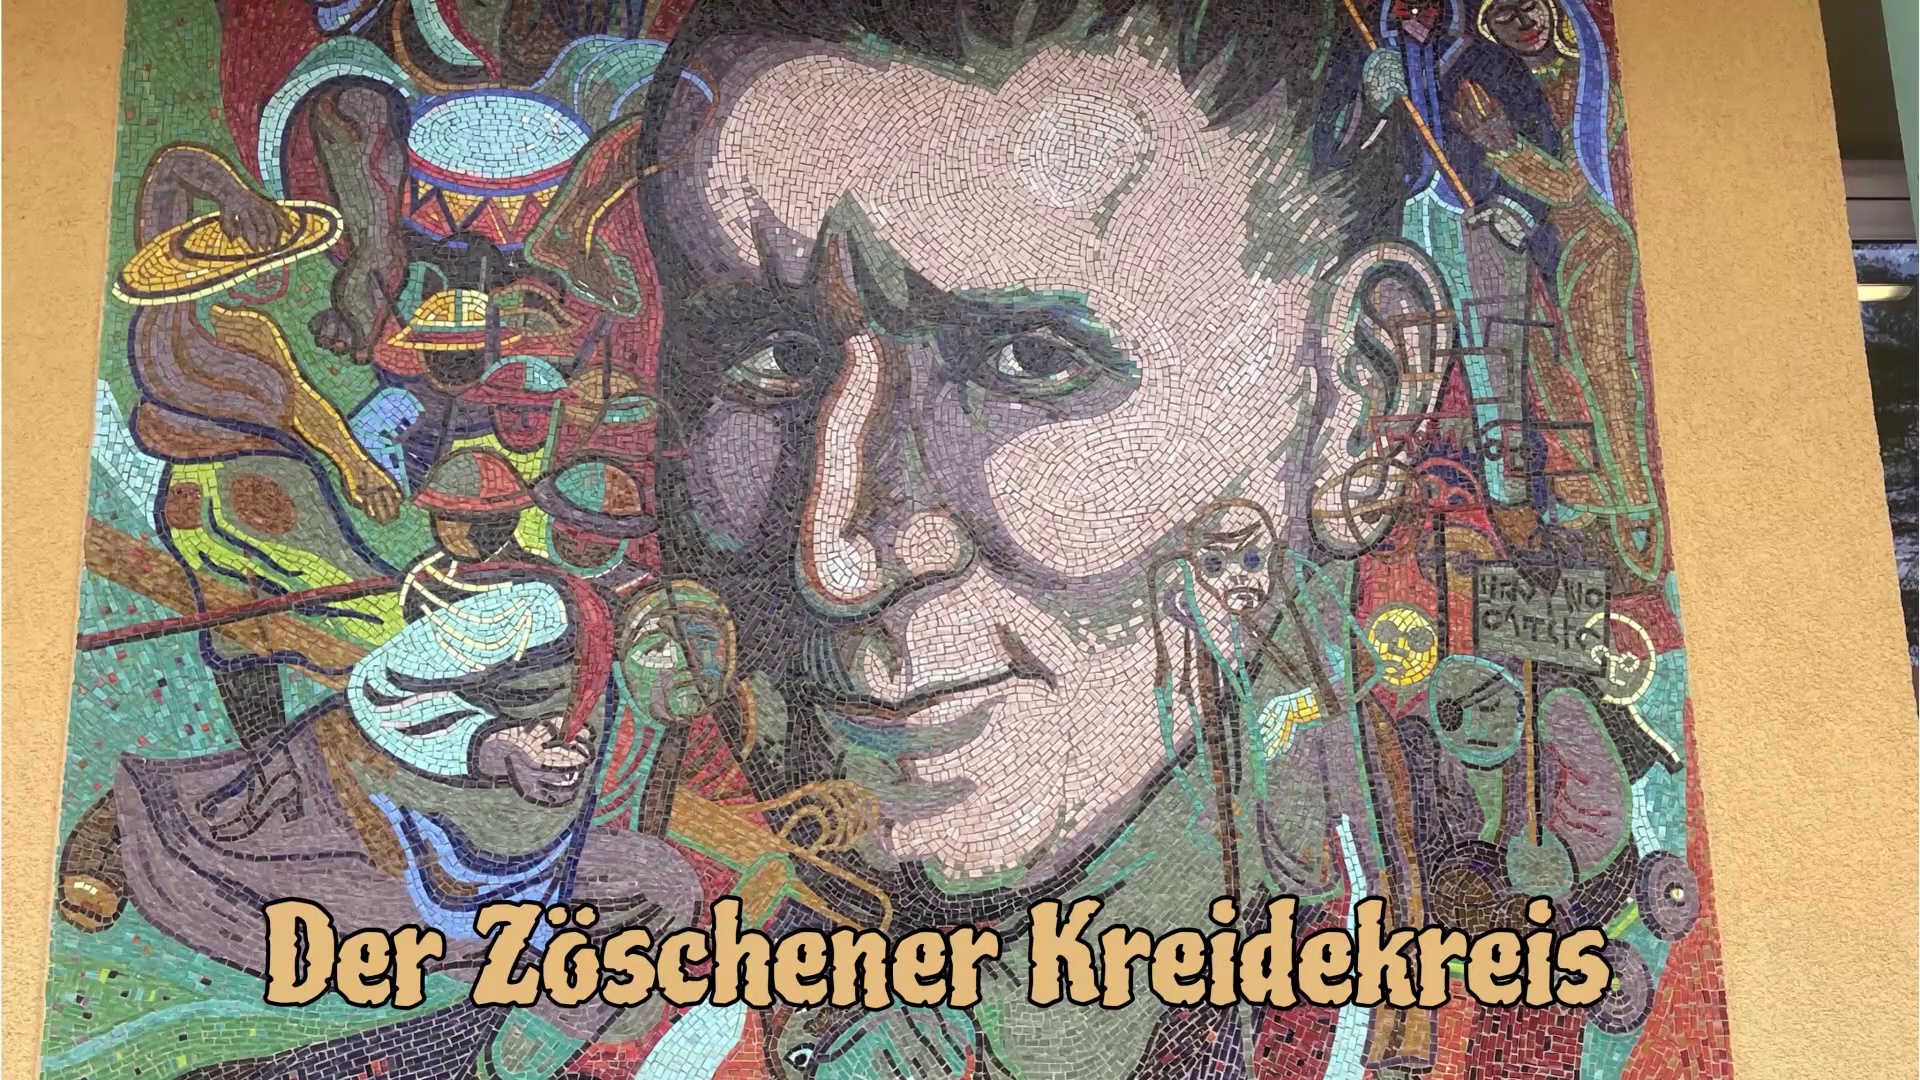 "Romeo und Julia in Zöschen" & "Der Zöschener Kreidekreis" - Ergebnisse der Projektwoche der Sekundarschule Berthold Brecht Zöschen